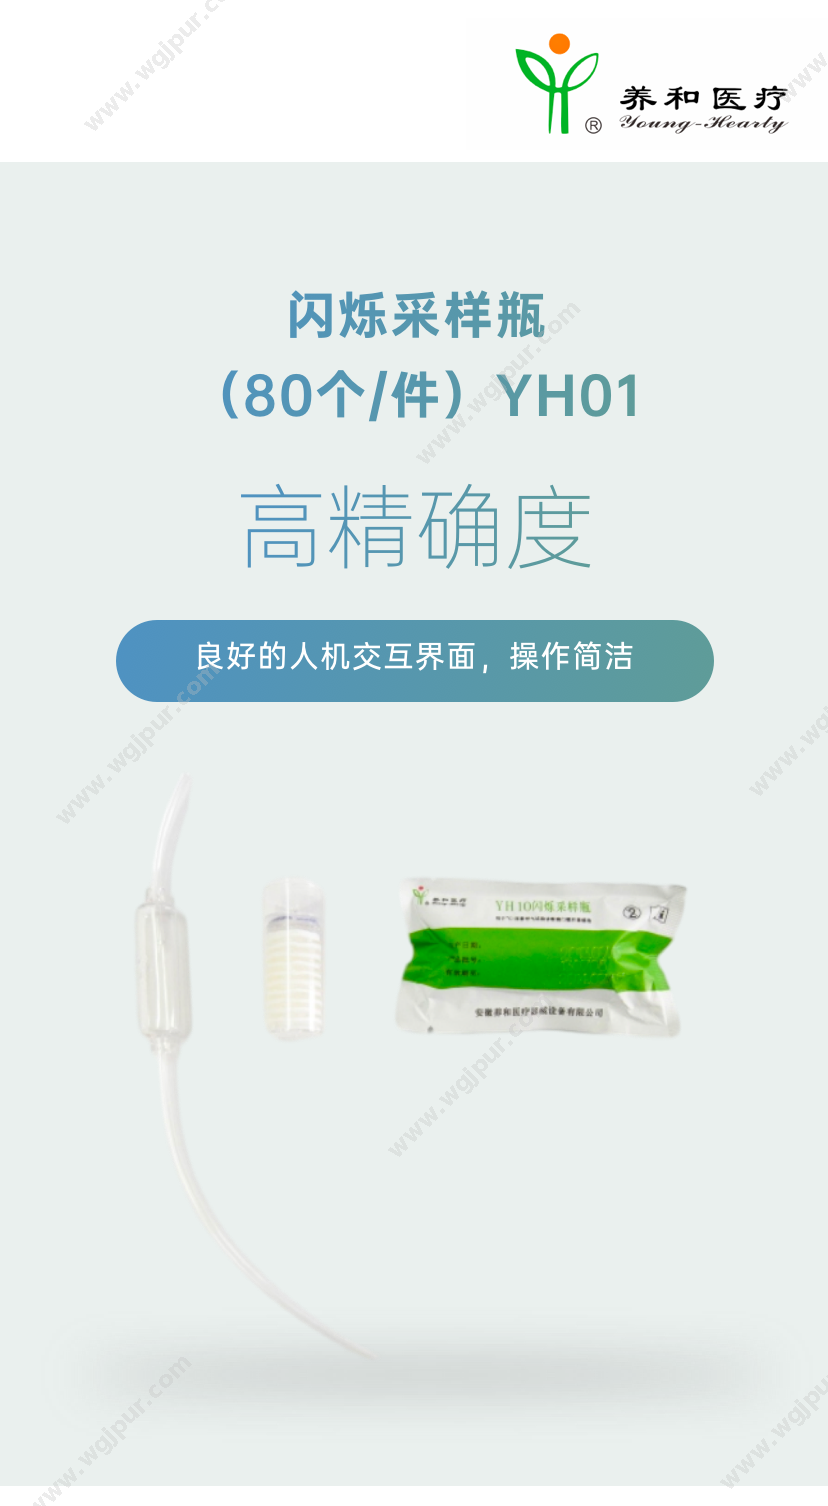 养和医疗 YH01 医用耗材